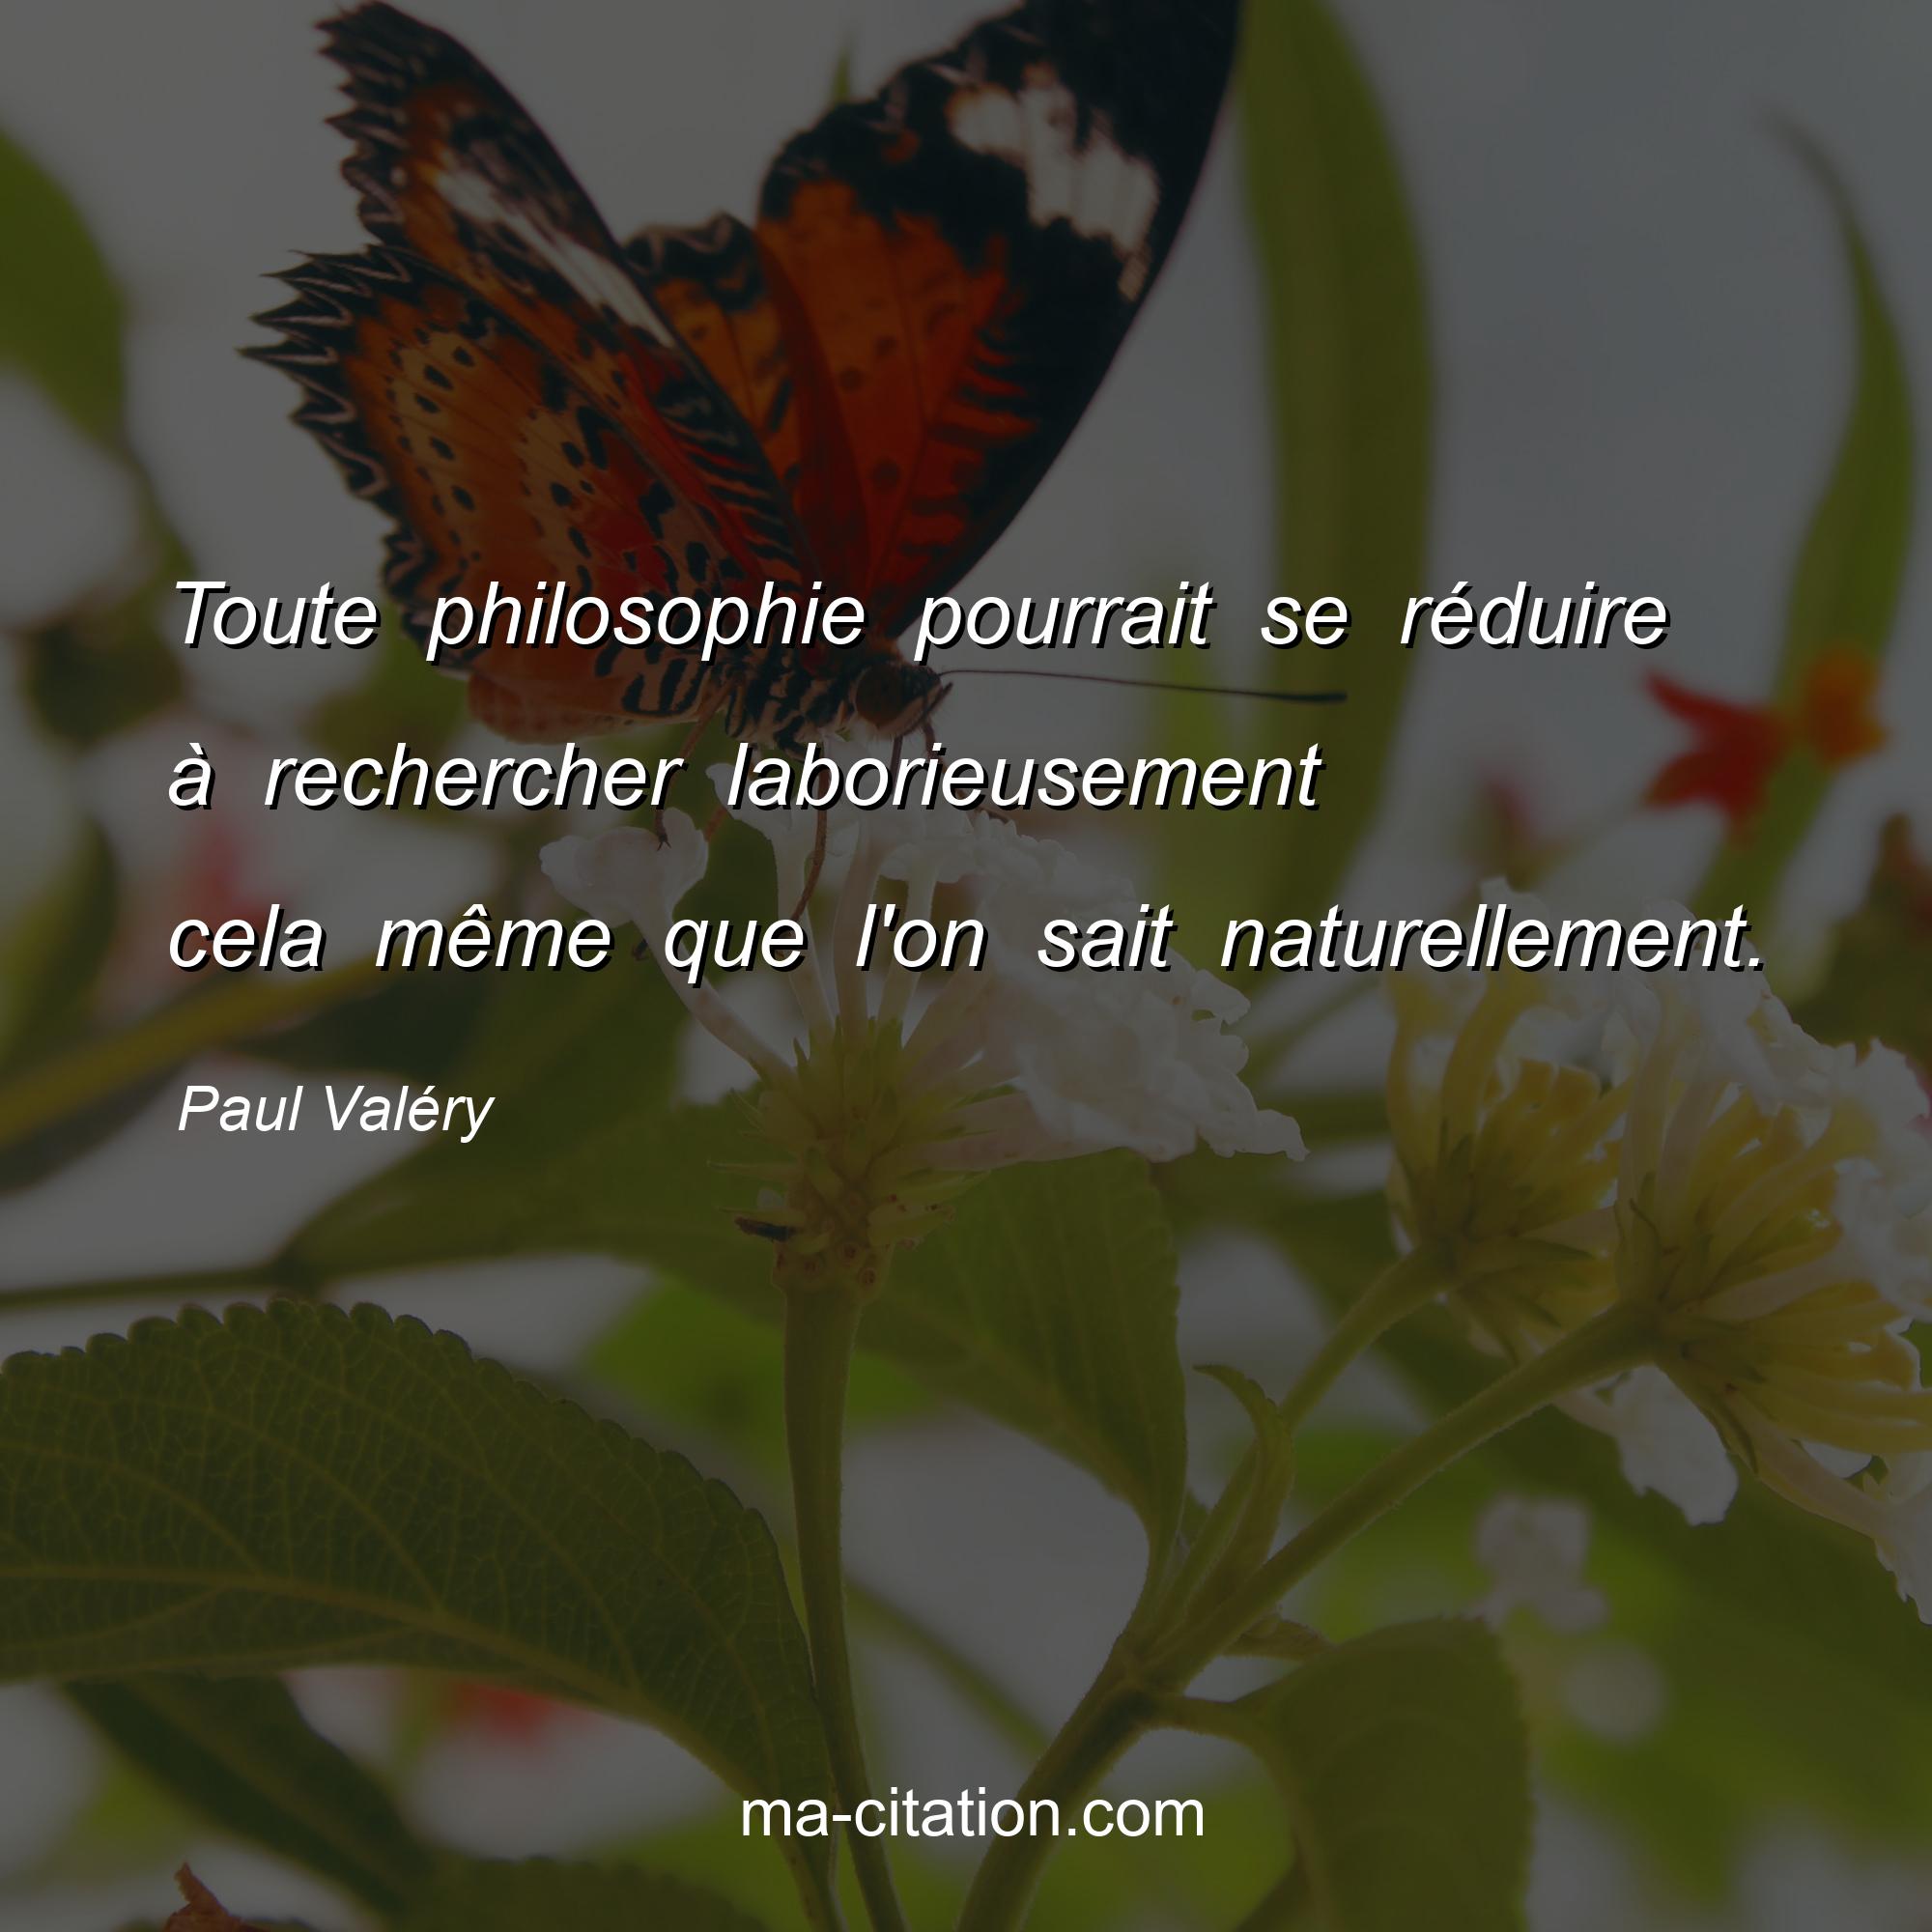 Paul Valéry : Toute philosophie pourrait se réduire à rechercher laborieusement cela même que l'on sait naturellement.